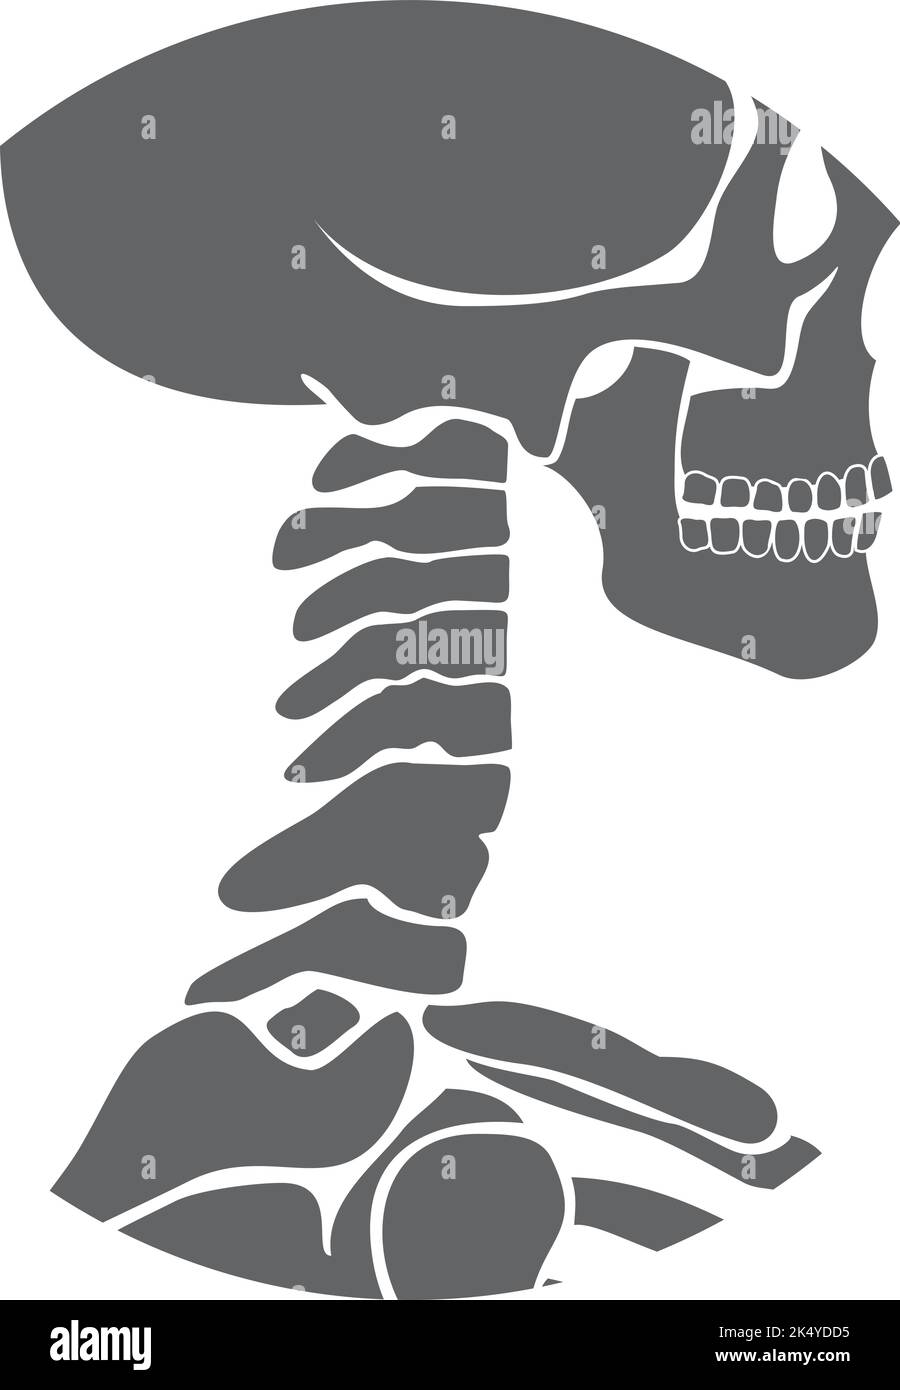 Struttura ossea del collo umano. Icona nera dell'anatomia Illustrazione Vettoriale